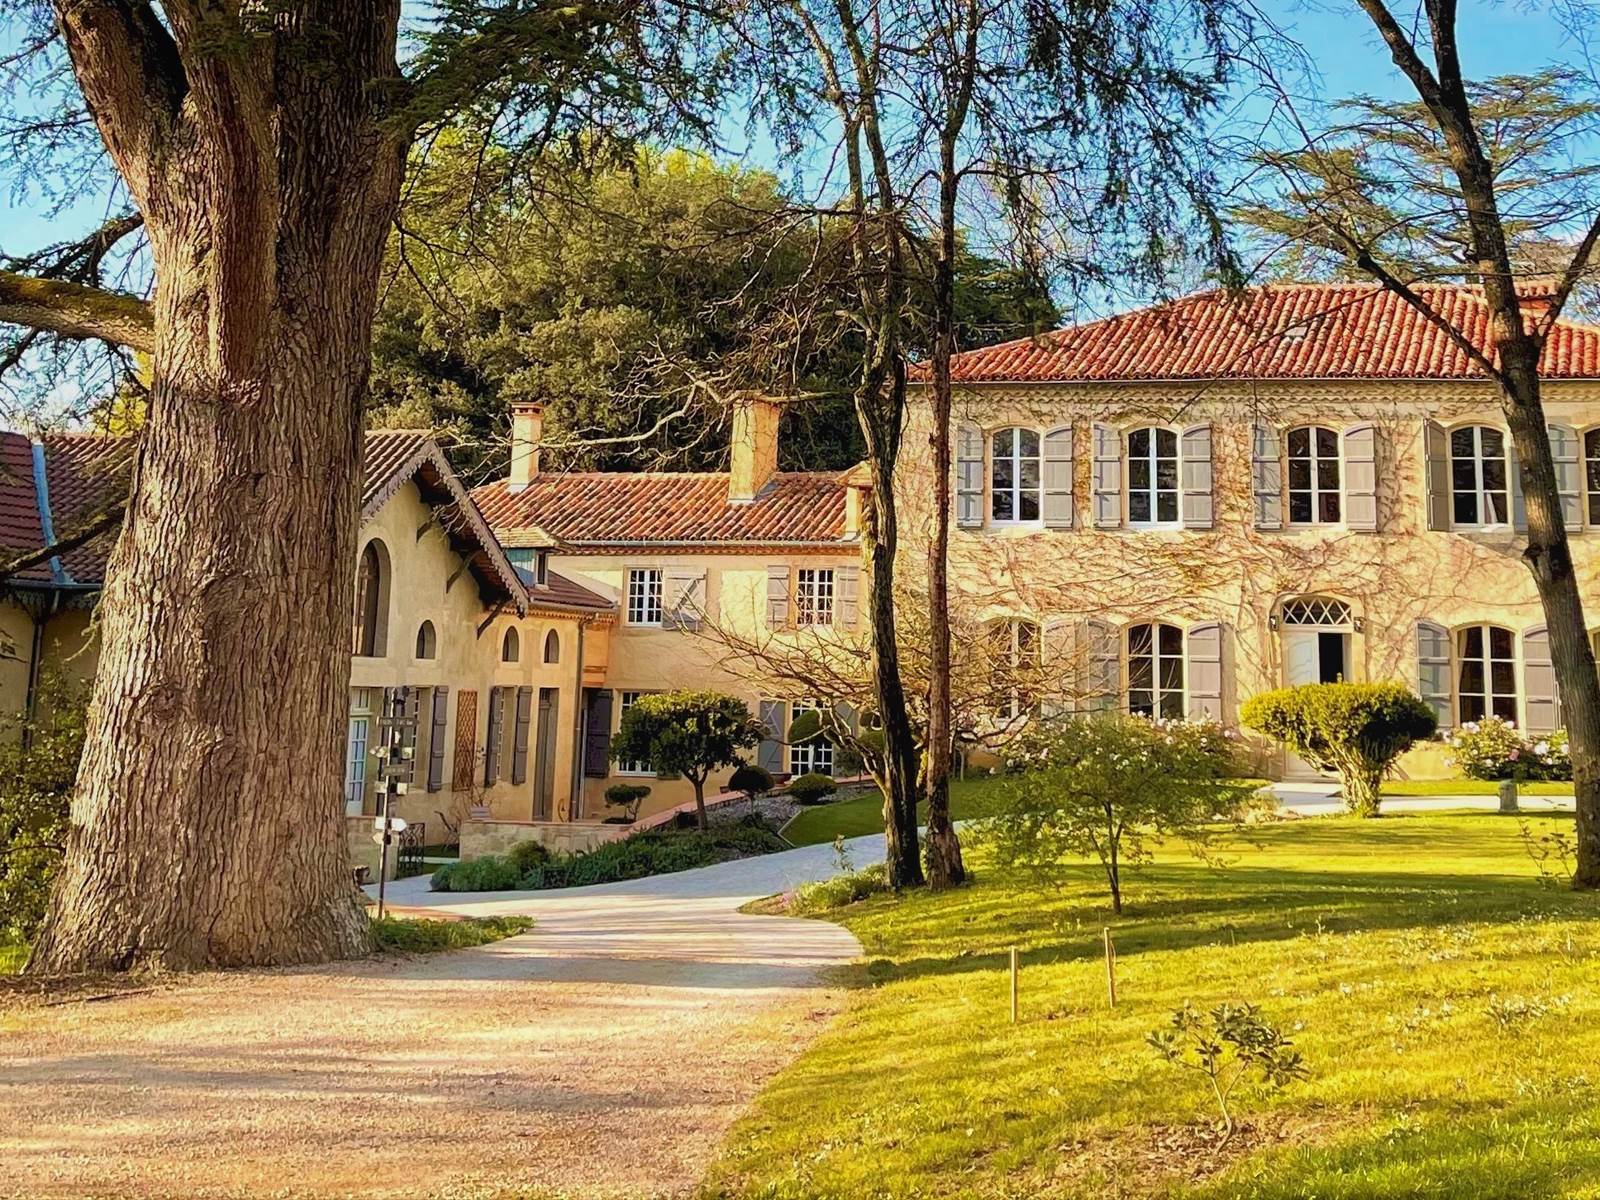 Maison Gascony - Vue d'ensemble du patrimoine bâti